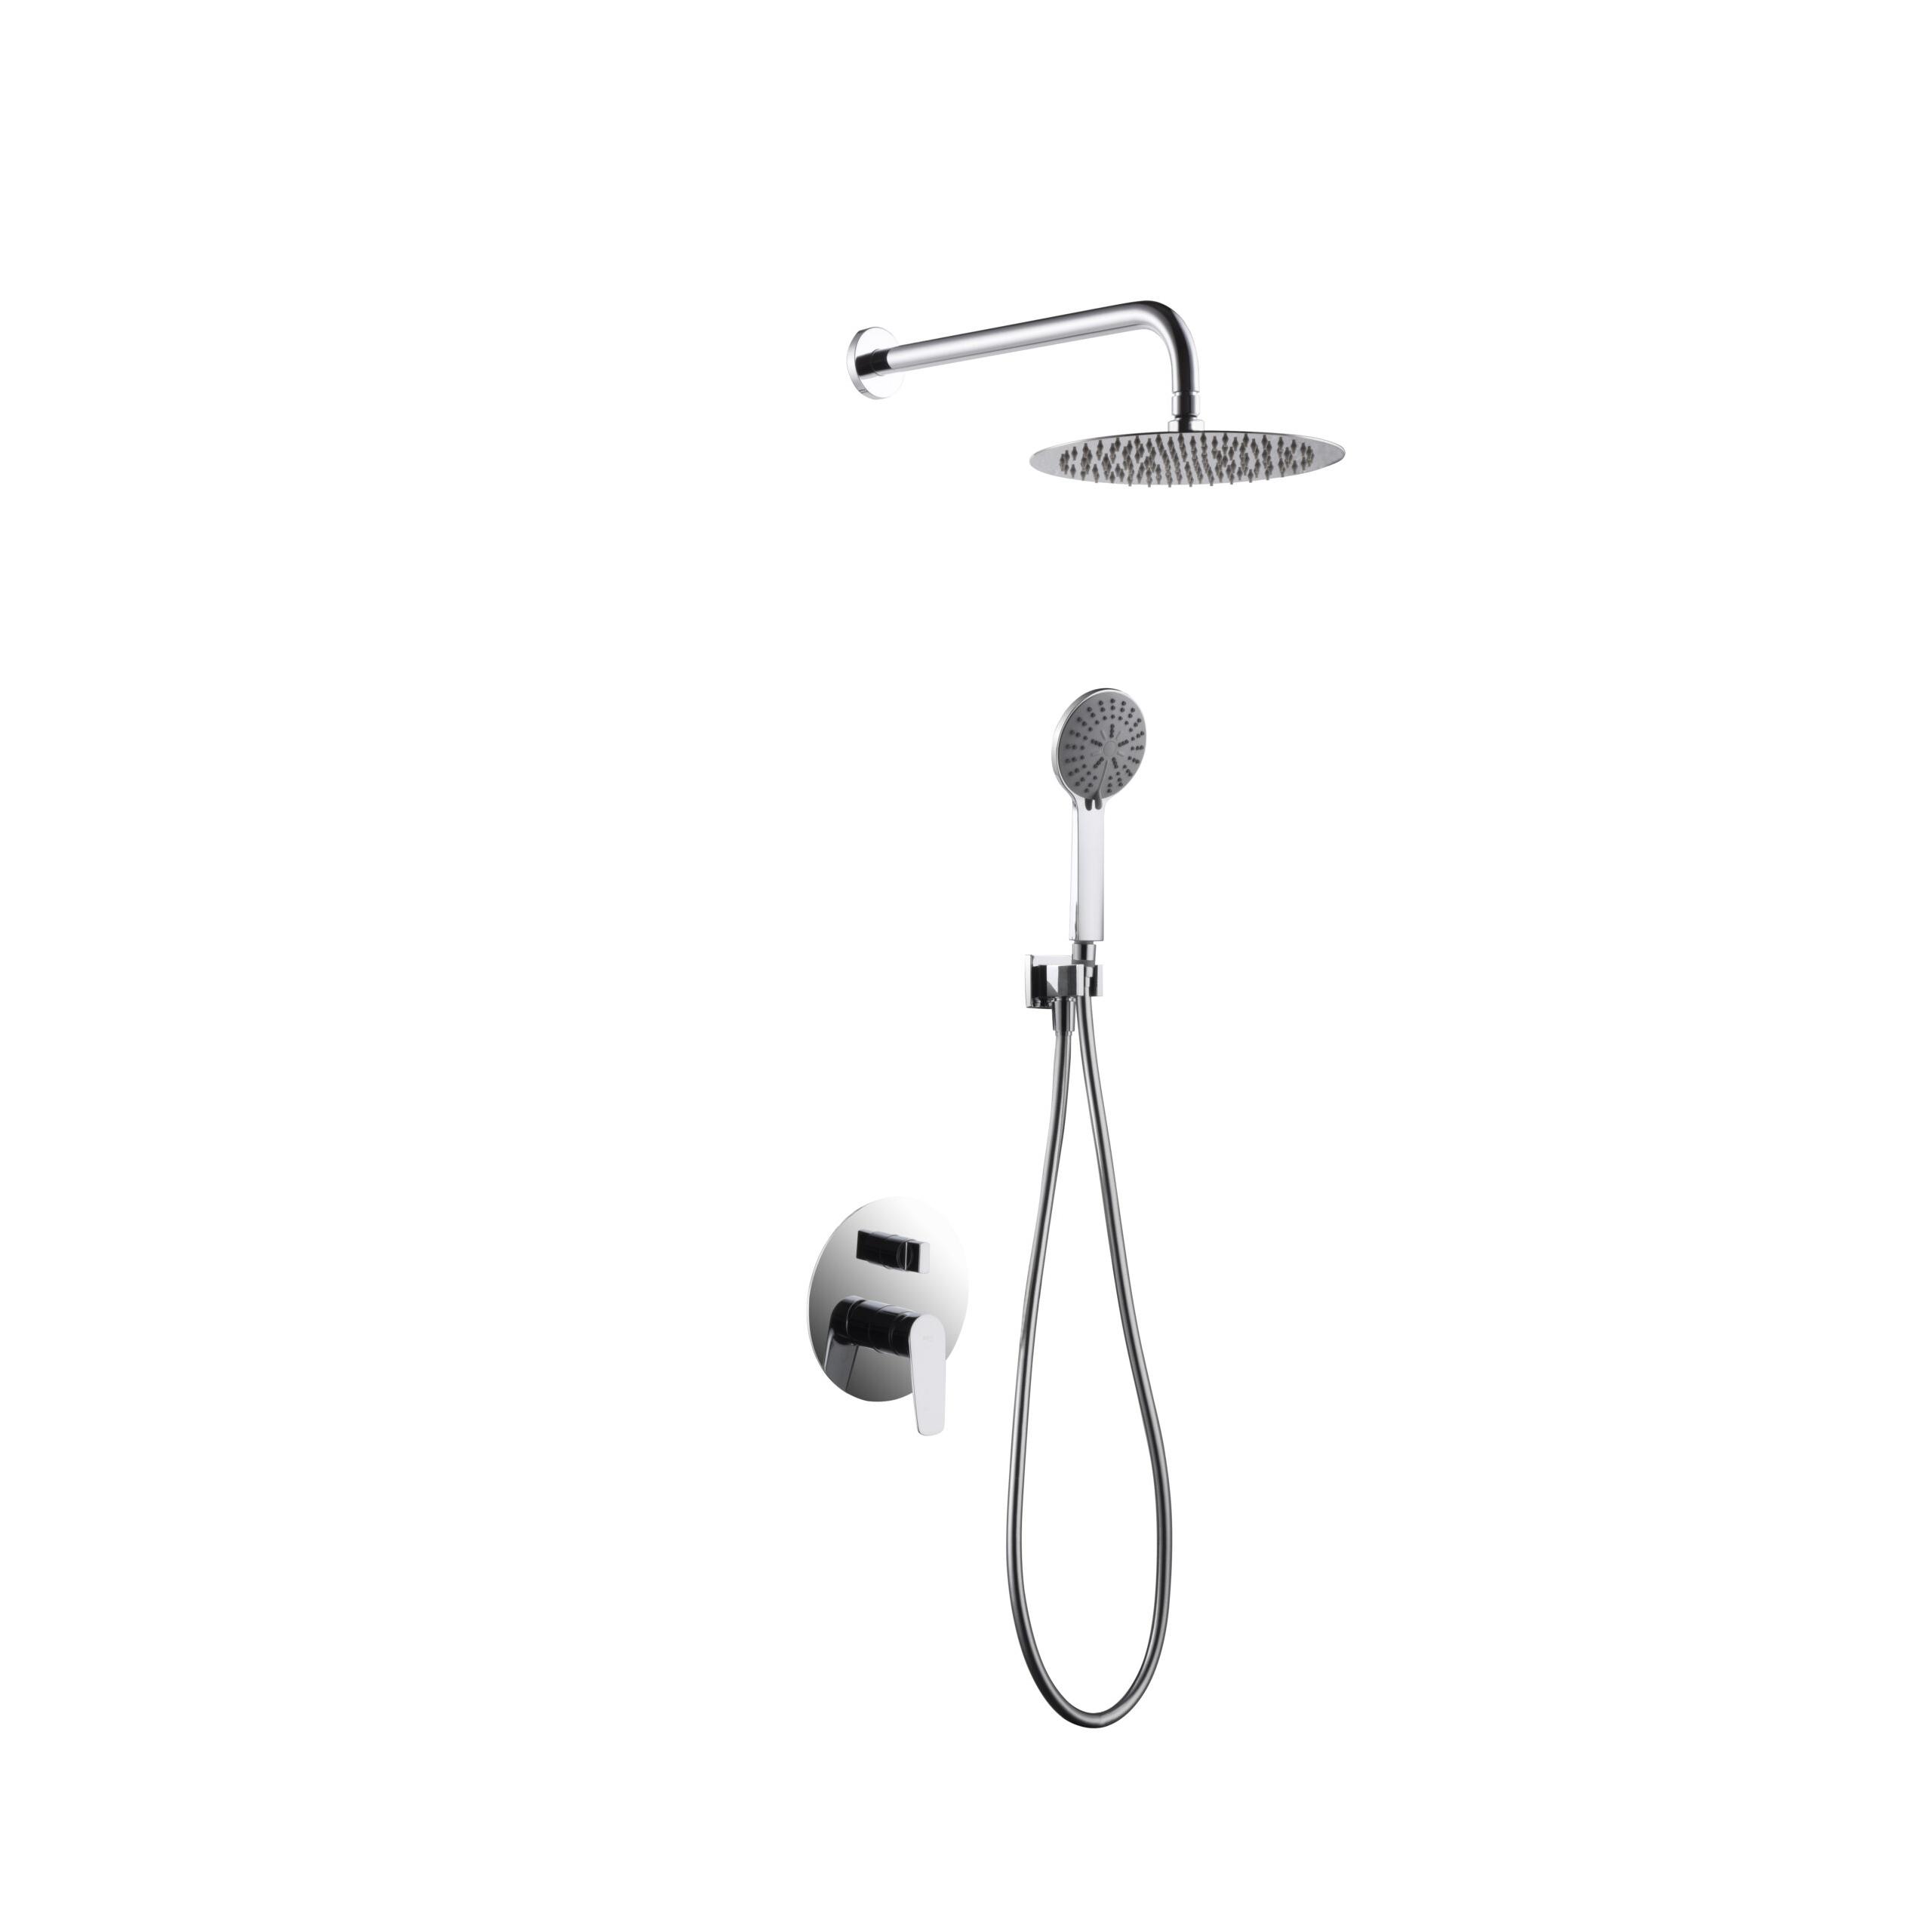 Conjunto de ducha termostática empotrado cromado serie Line - Imex Products